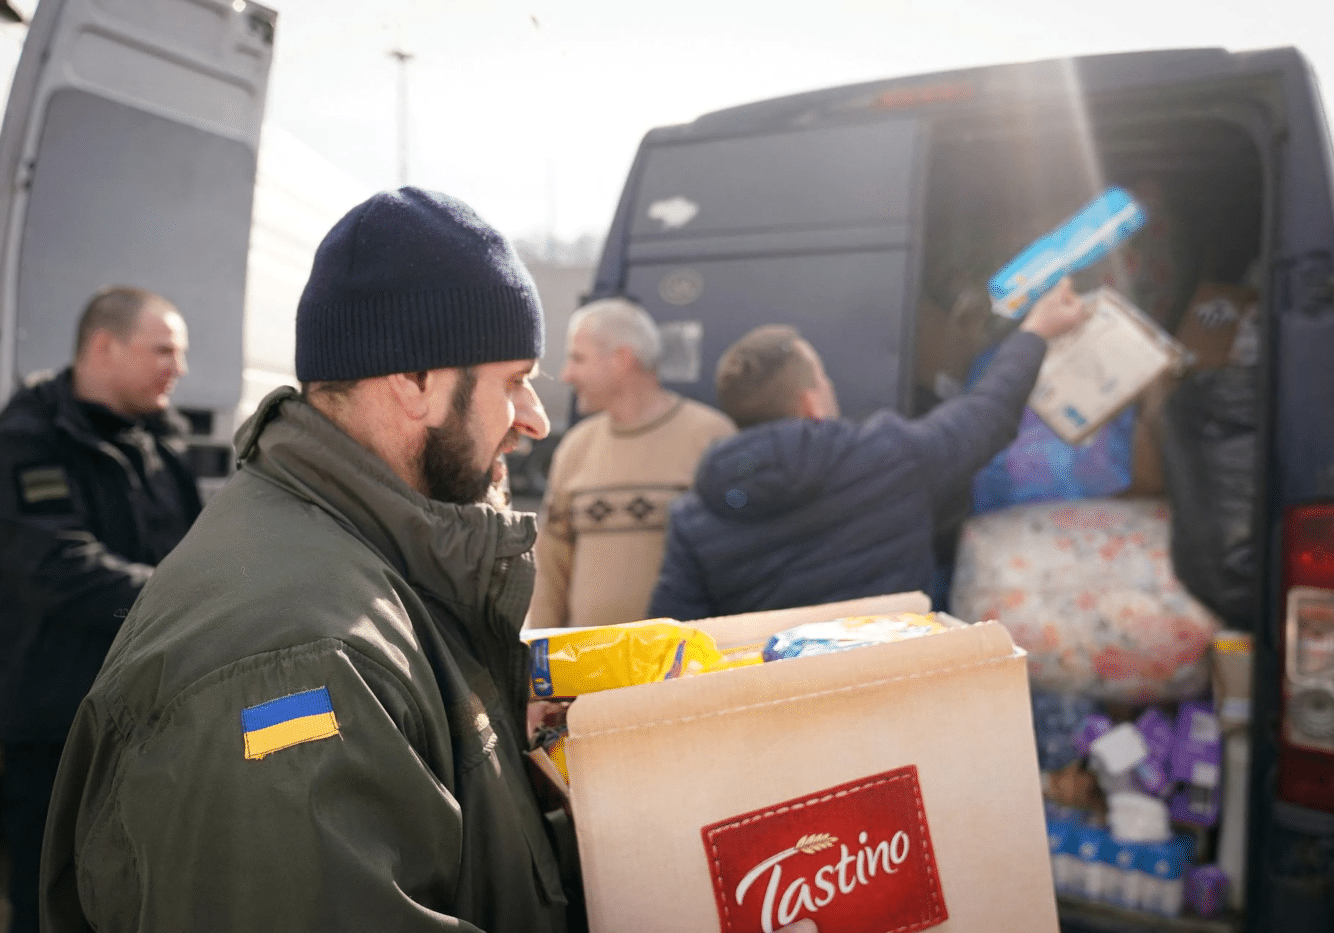 Ukraine Relief